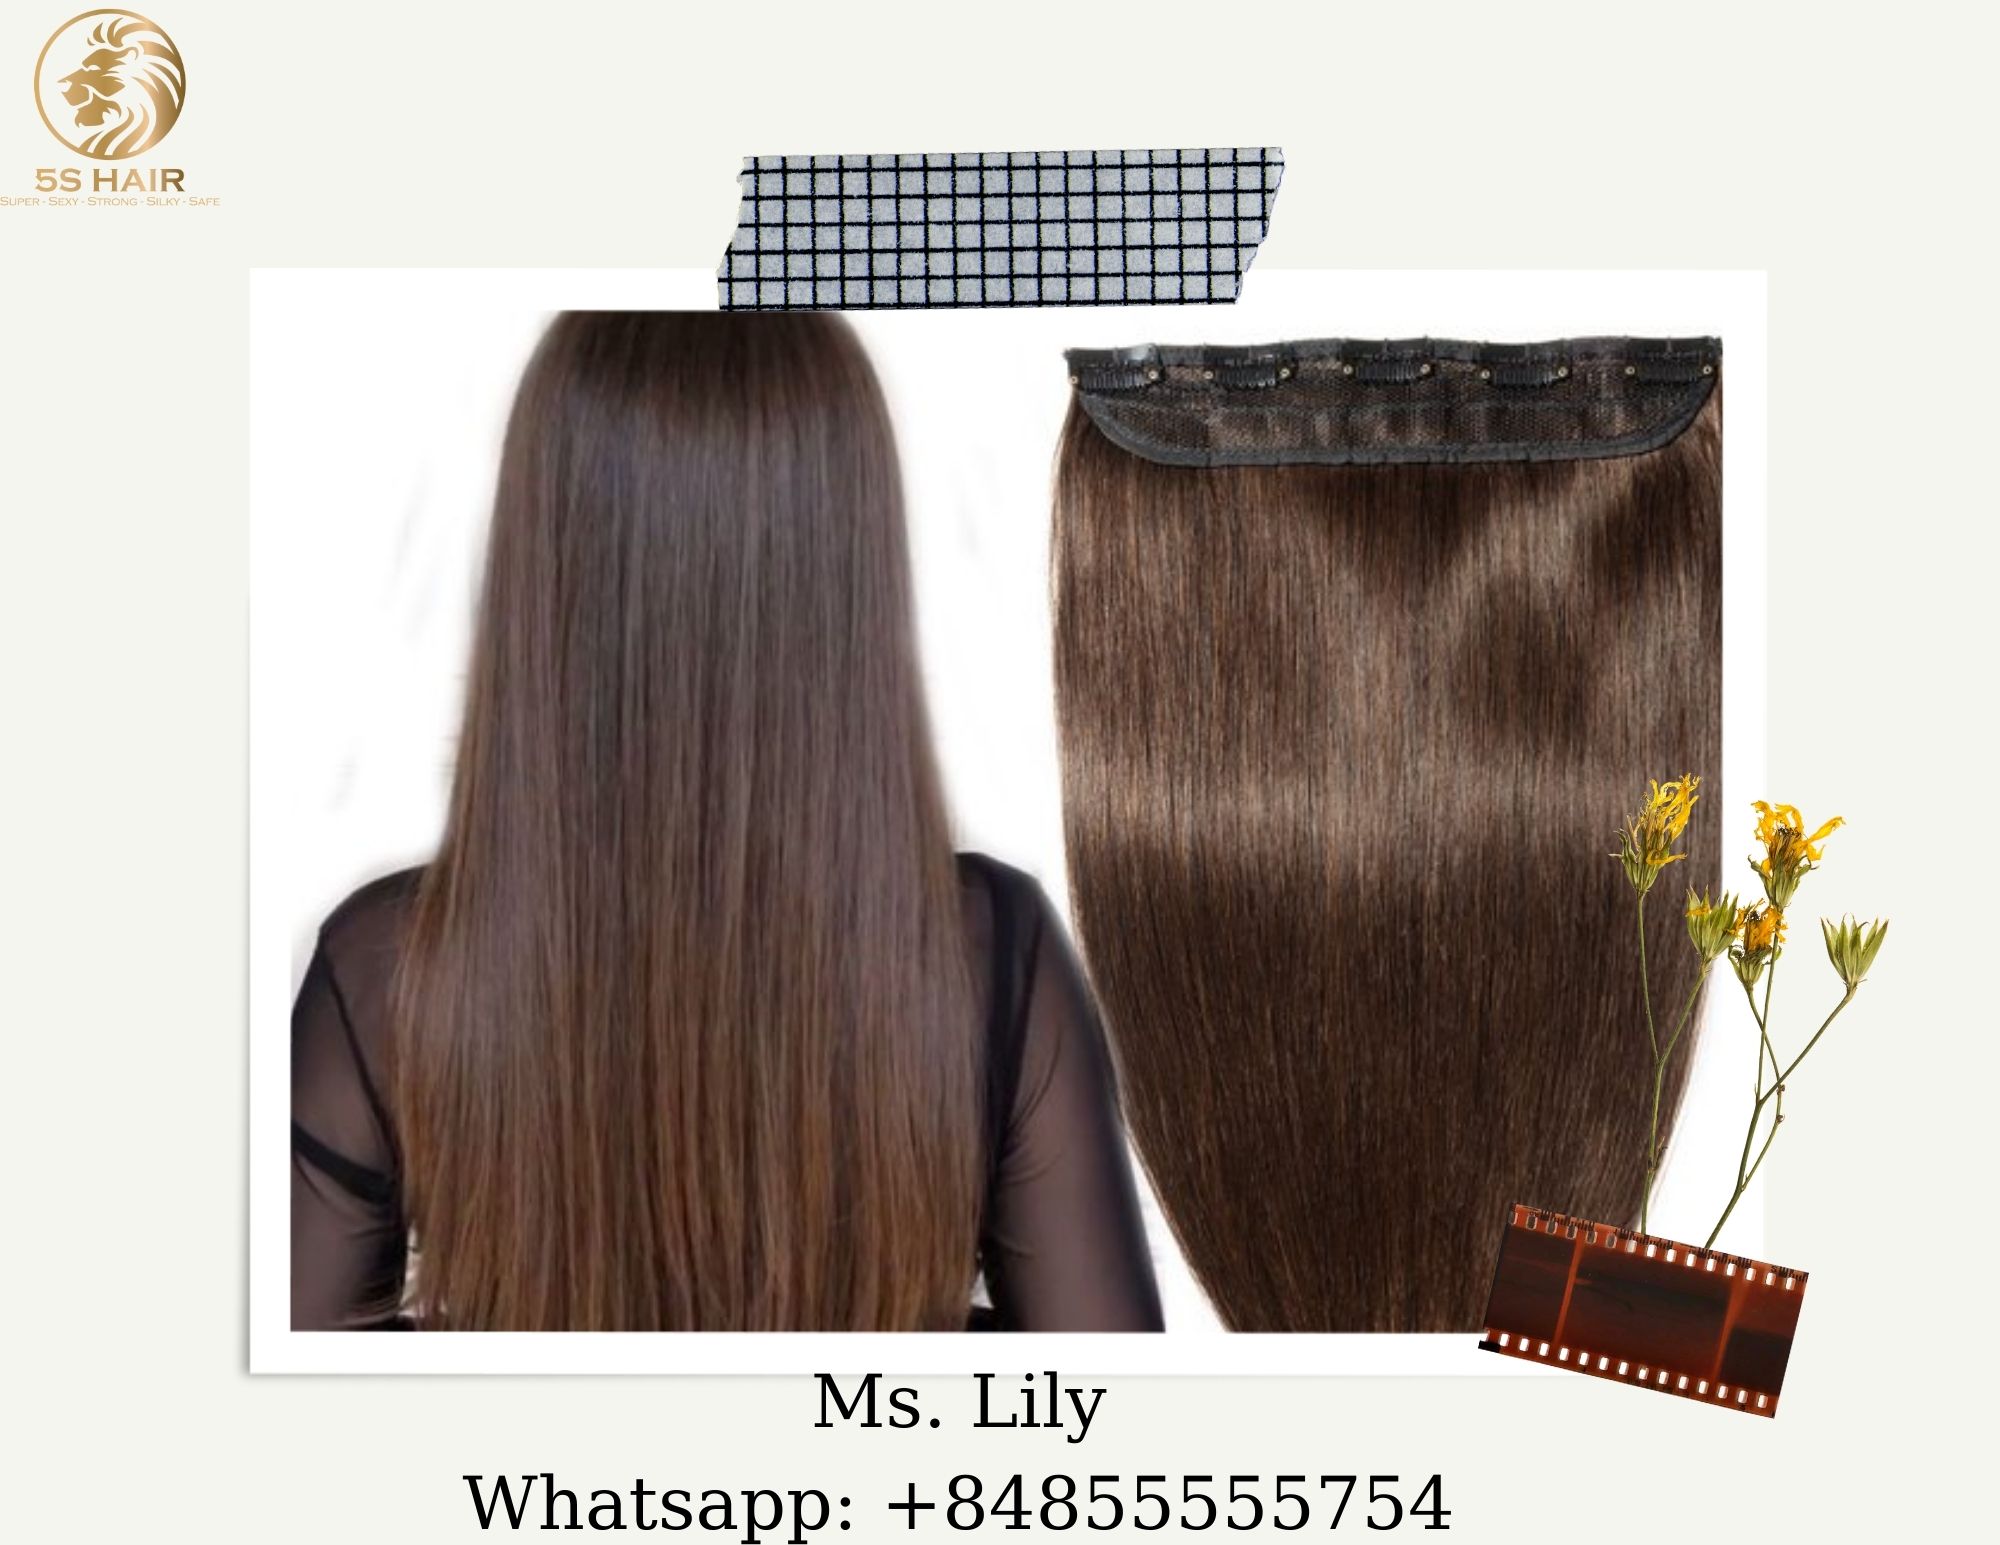 wholesale-russian-hair-extension-supplies-high-end-hair-vendors